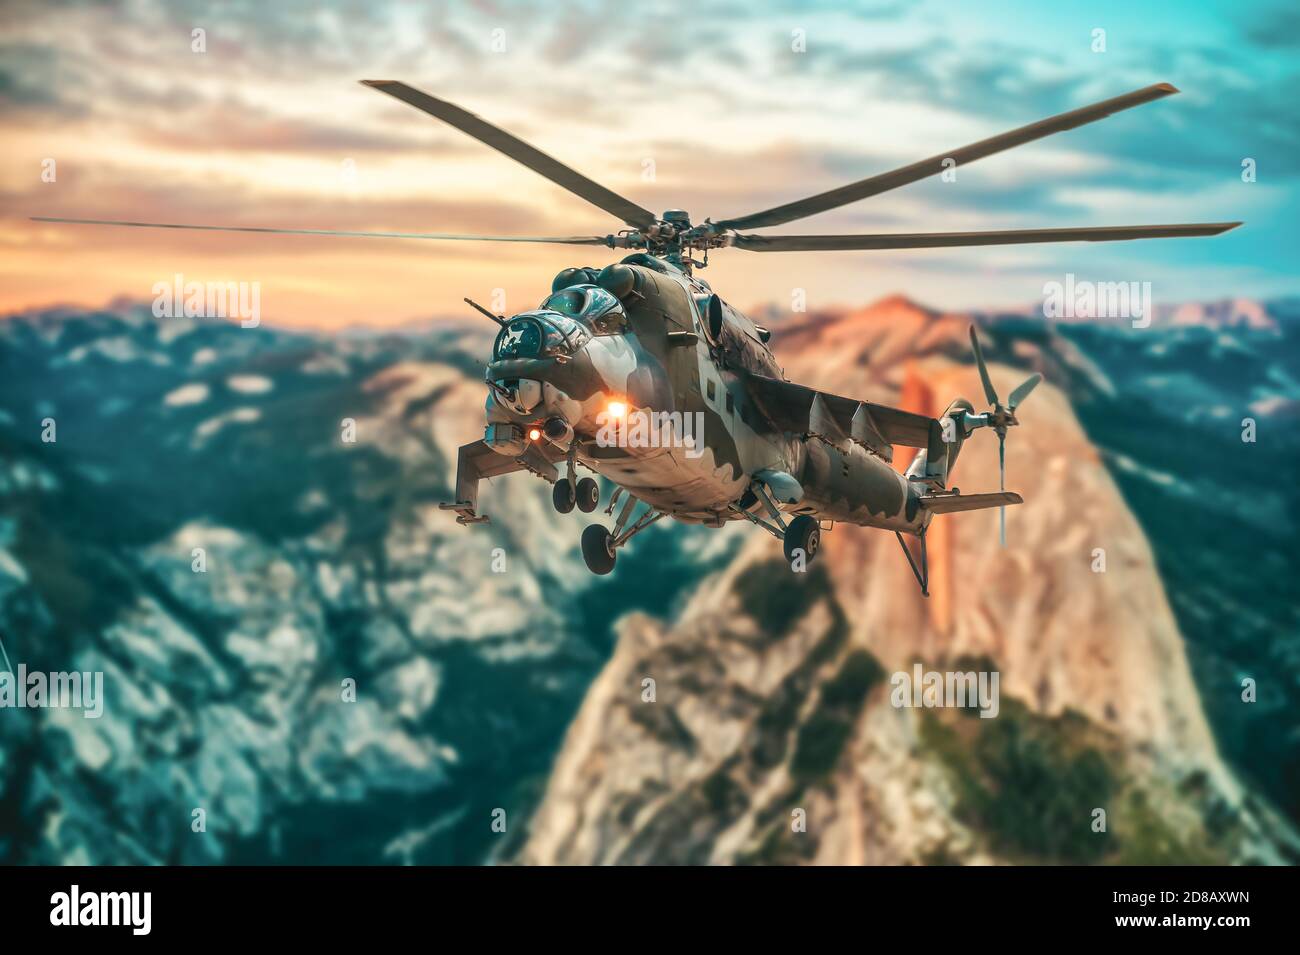 L'hélicpter d'attaque russe survole un beau paysage Banque D'Images